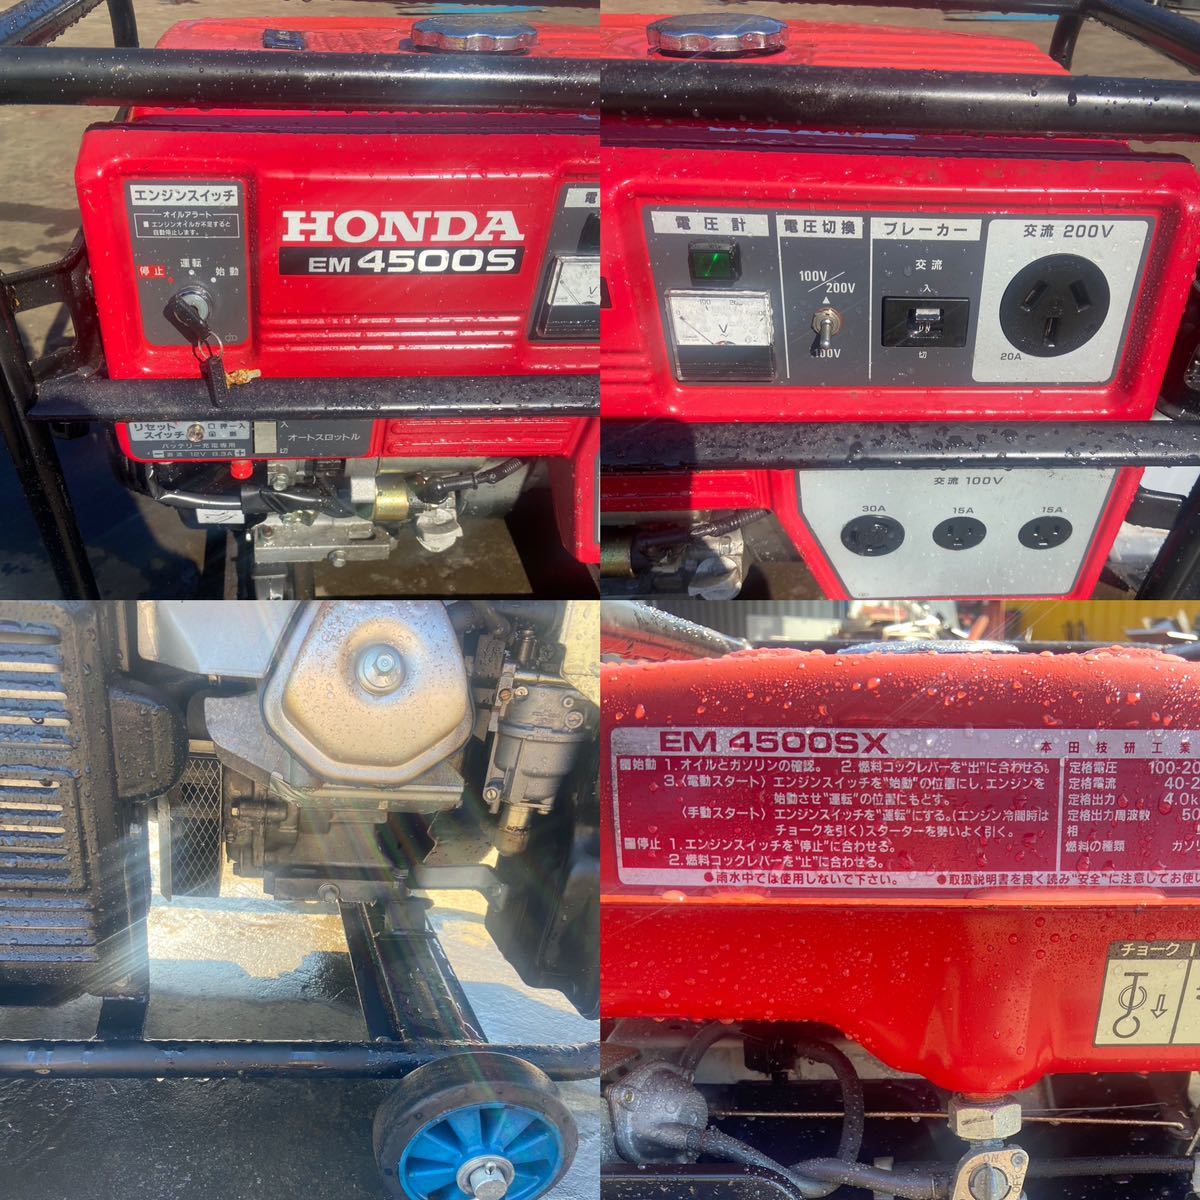 [A-171]HONDA генератор EM4500SX ①